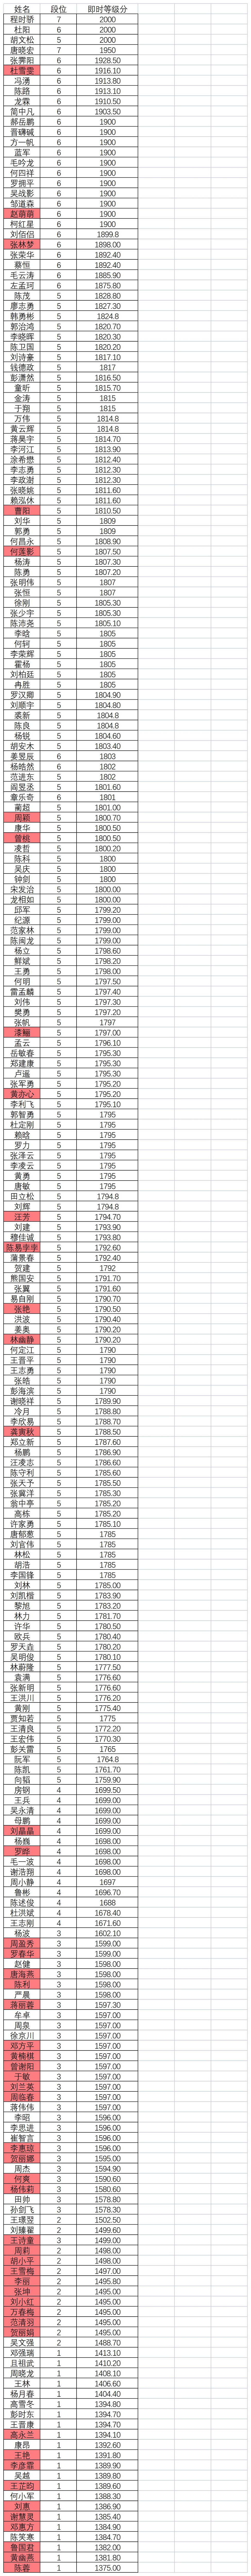 四川省围棋业余等级分（截止到2022年12月14日.jpg